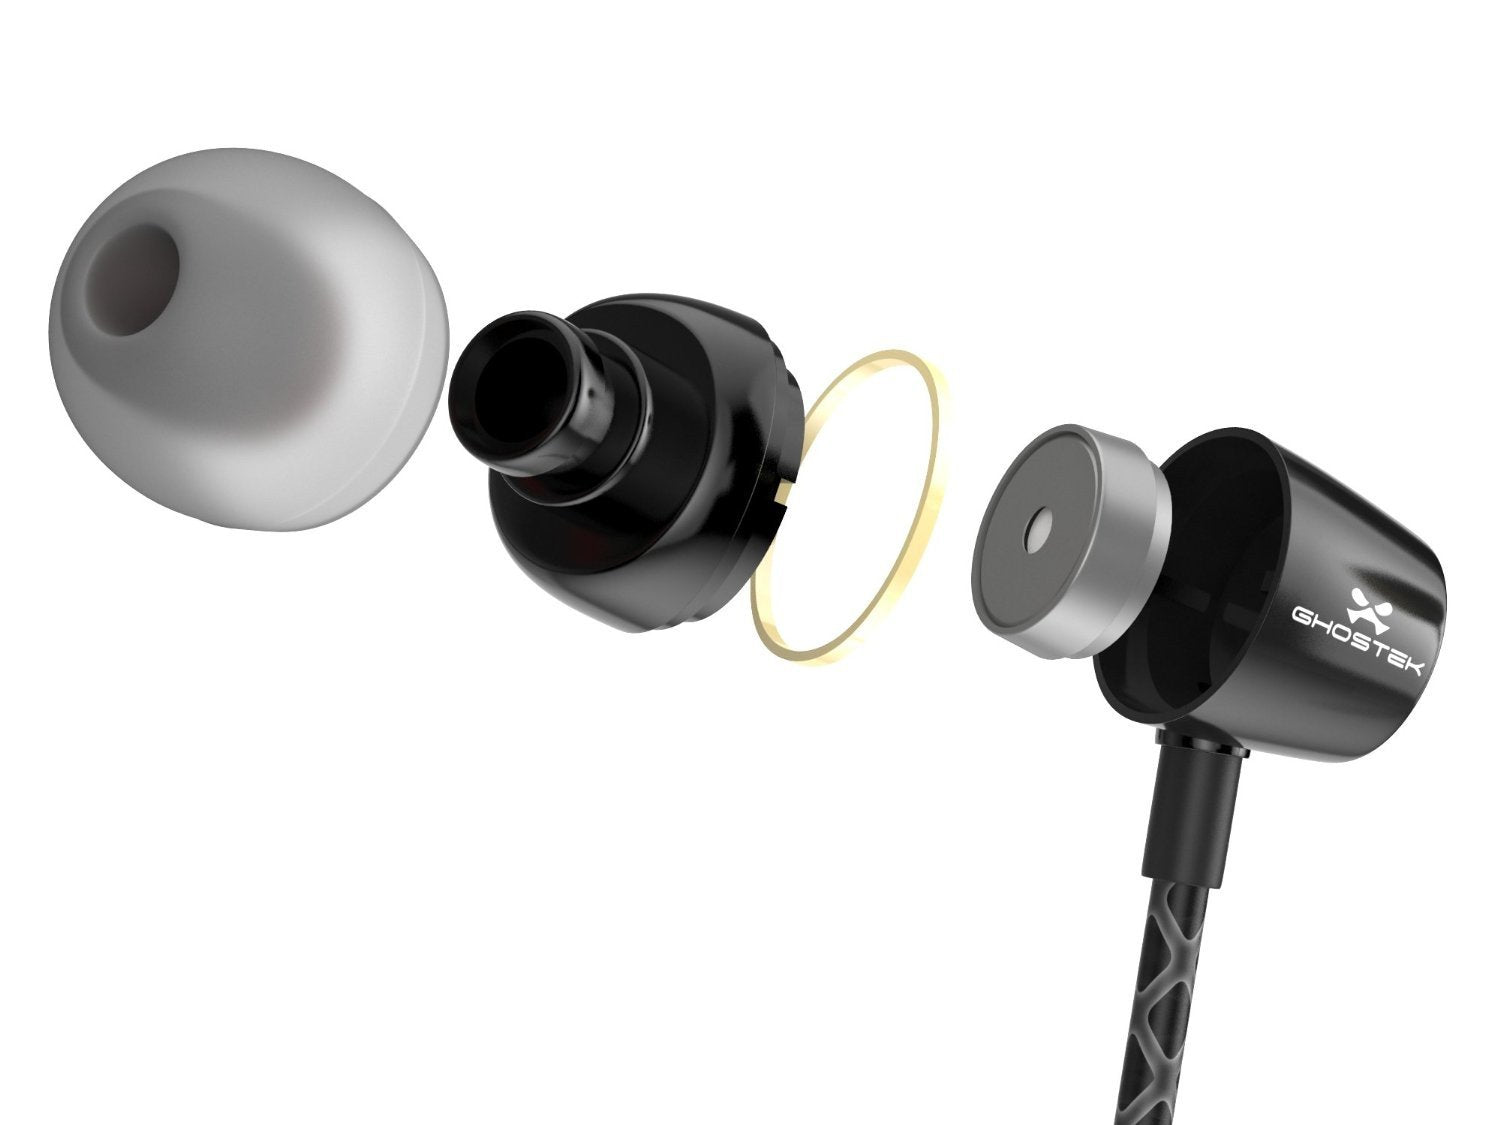 Wired 3.5MM Headphones Earphones, Ghostek Turbine Black Series Wired Earbuds | Built-In Microphone